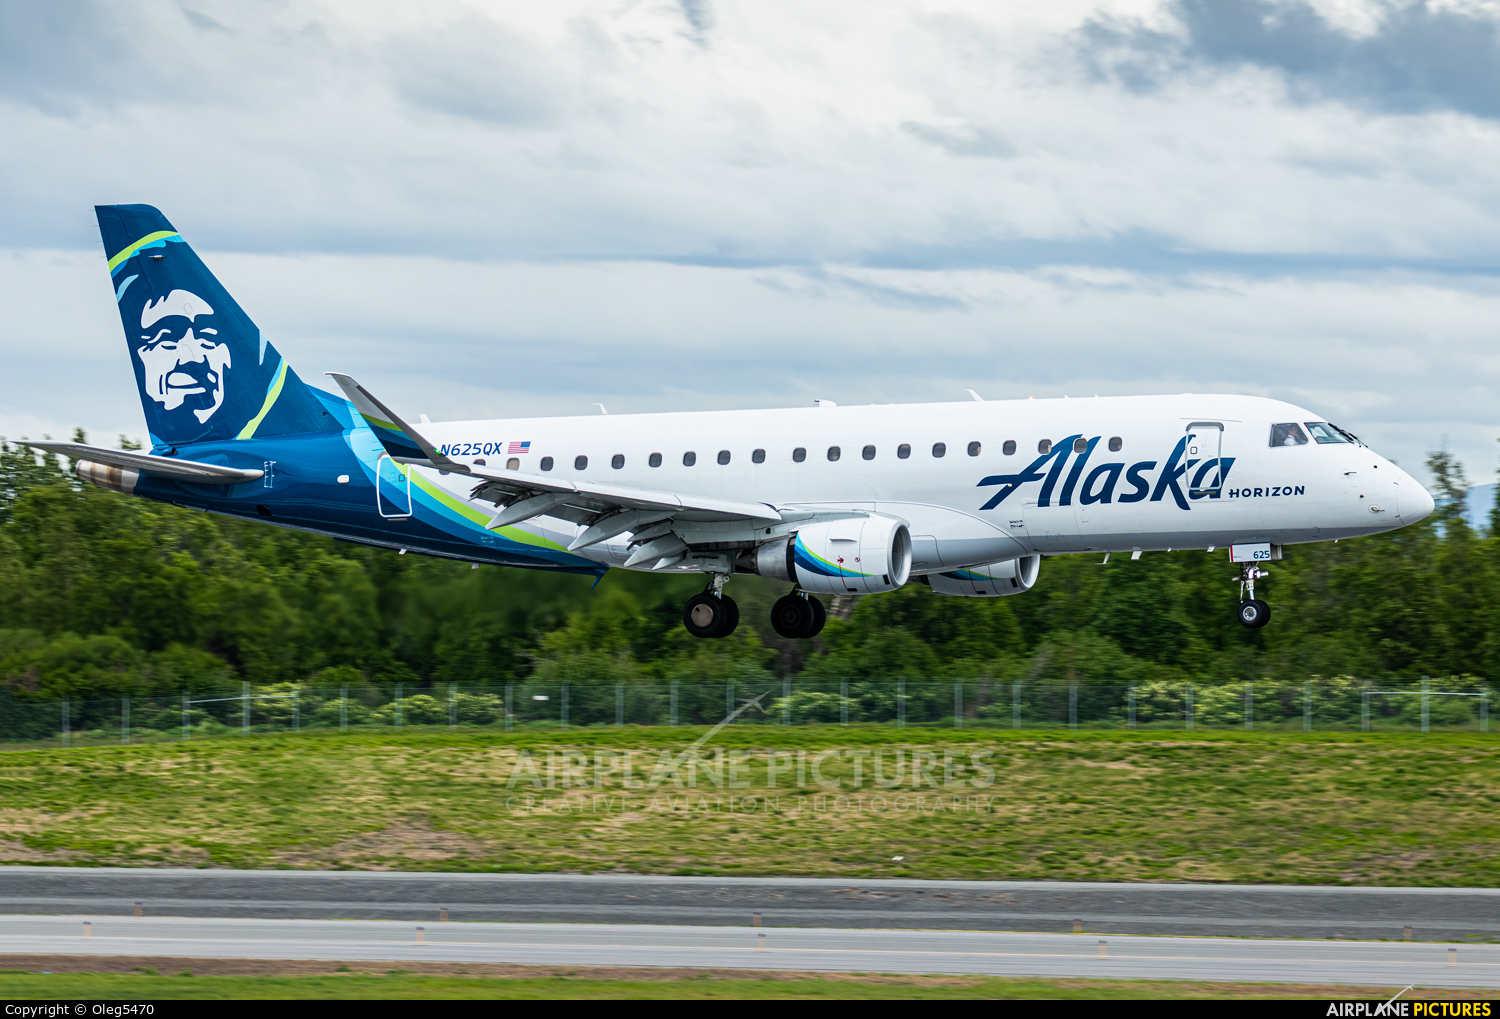 Alaska Airlines - Horizon Air N625QX aircraft at Anchorage - Ted Stevens Intl / Kulis Air National Guard Base